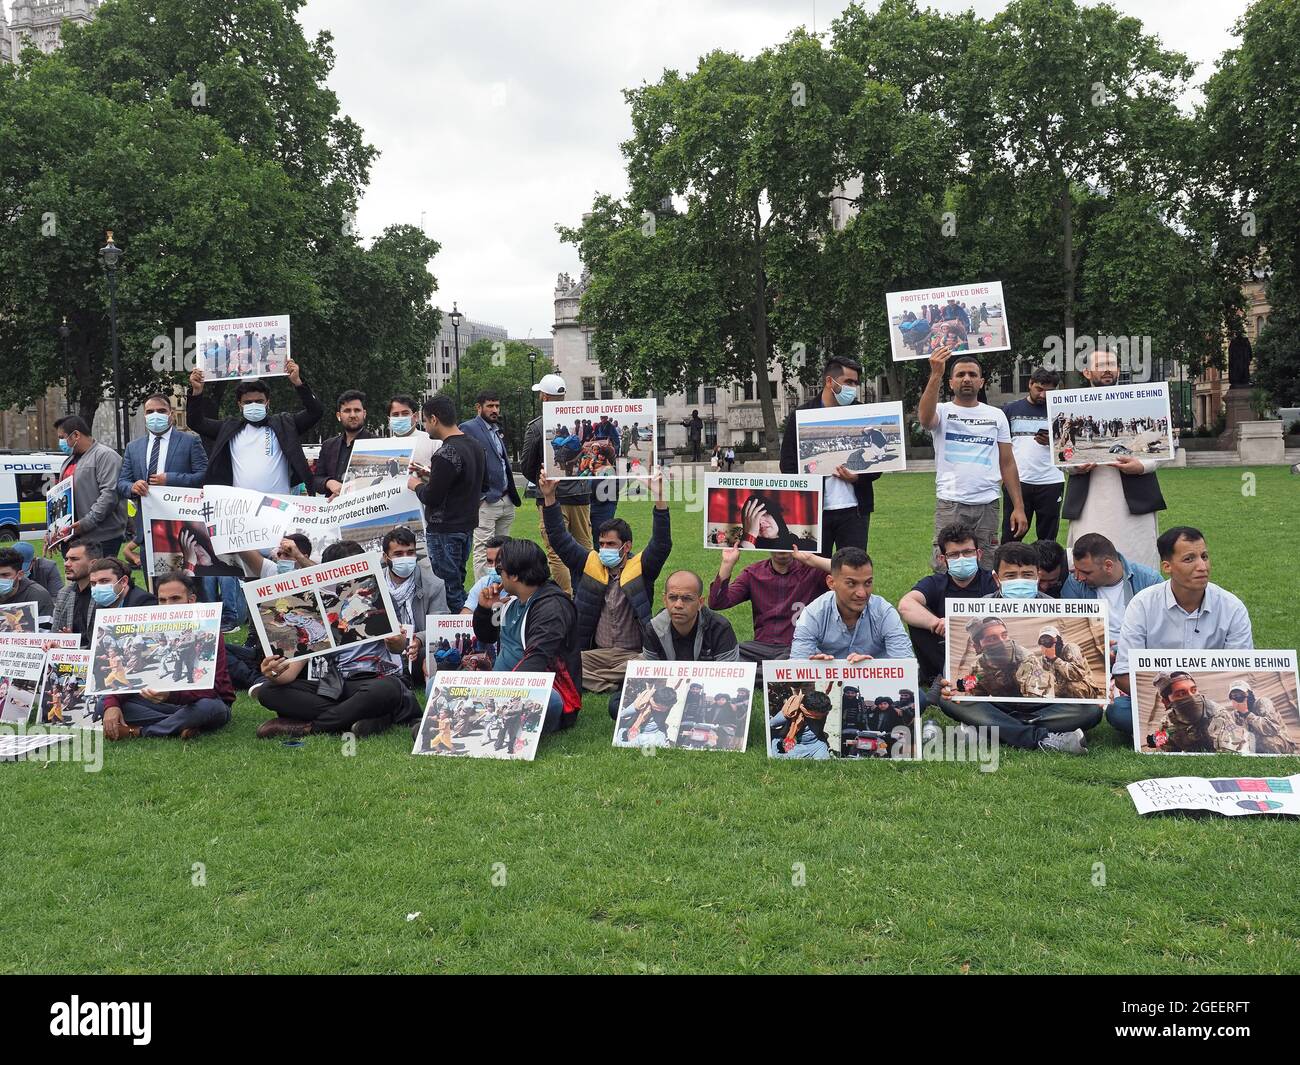 Un groupe d'Afghans comprenant d'anciens interprètes afghans protestant devant le Parlement britannique de Westminster à Londres le 18 août 2021 Banque D'Images